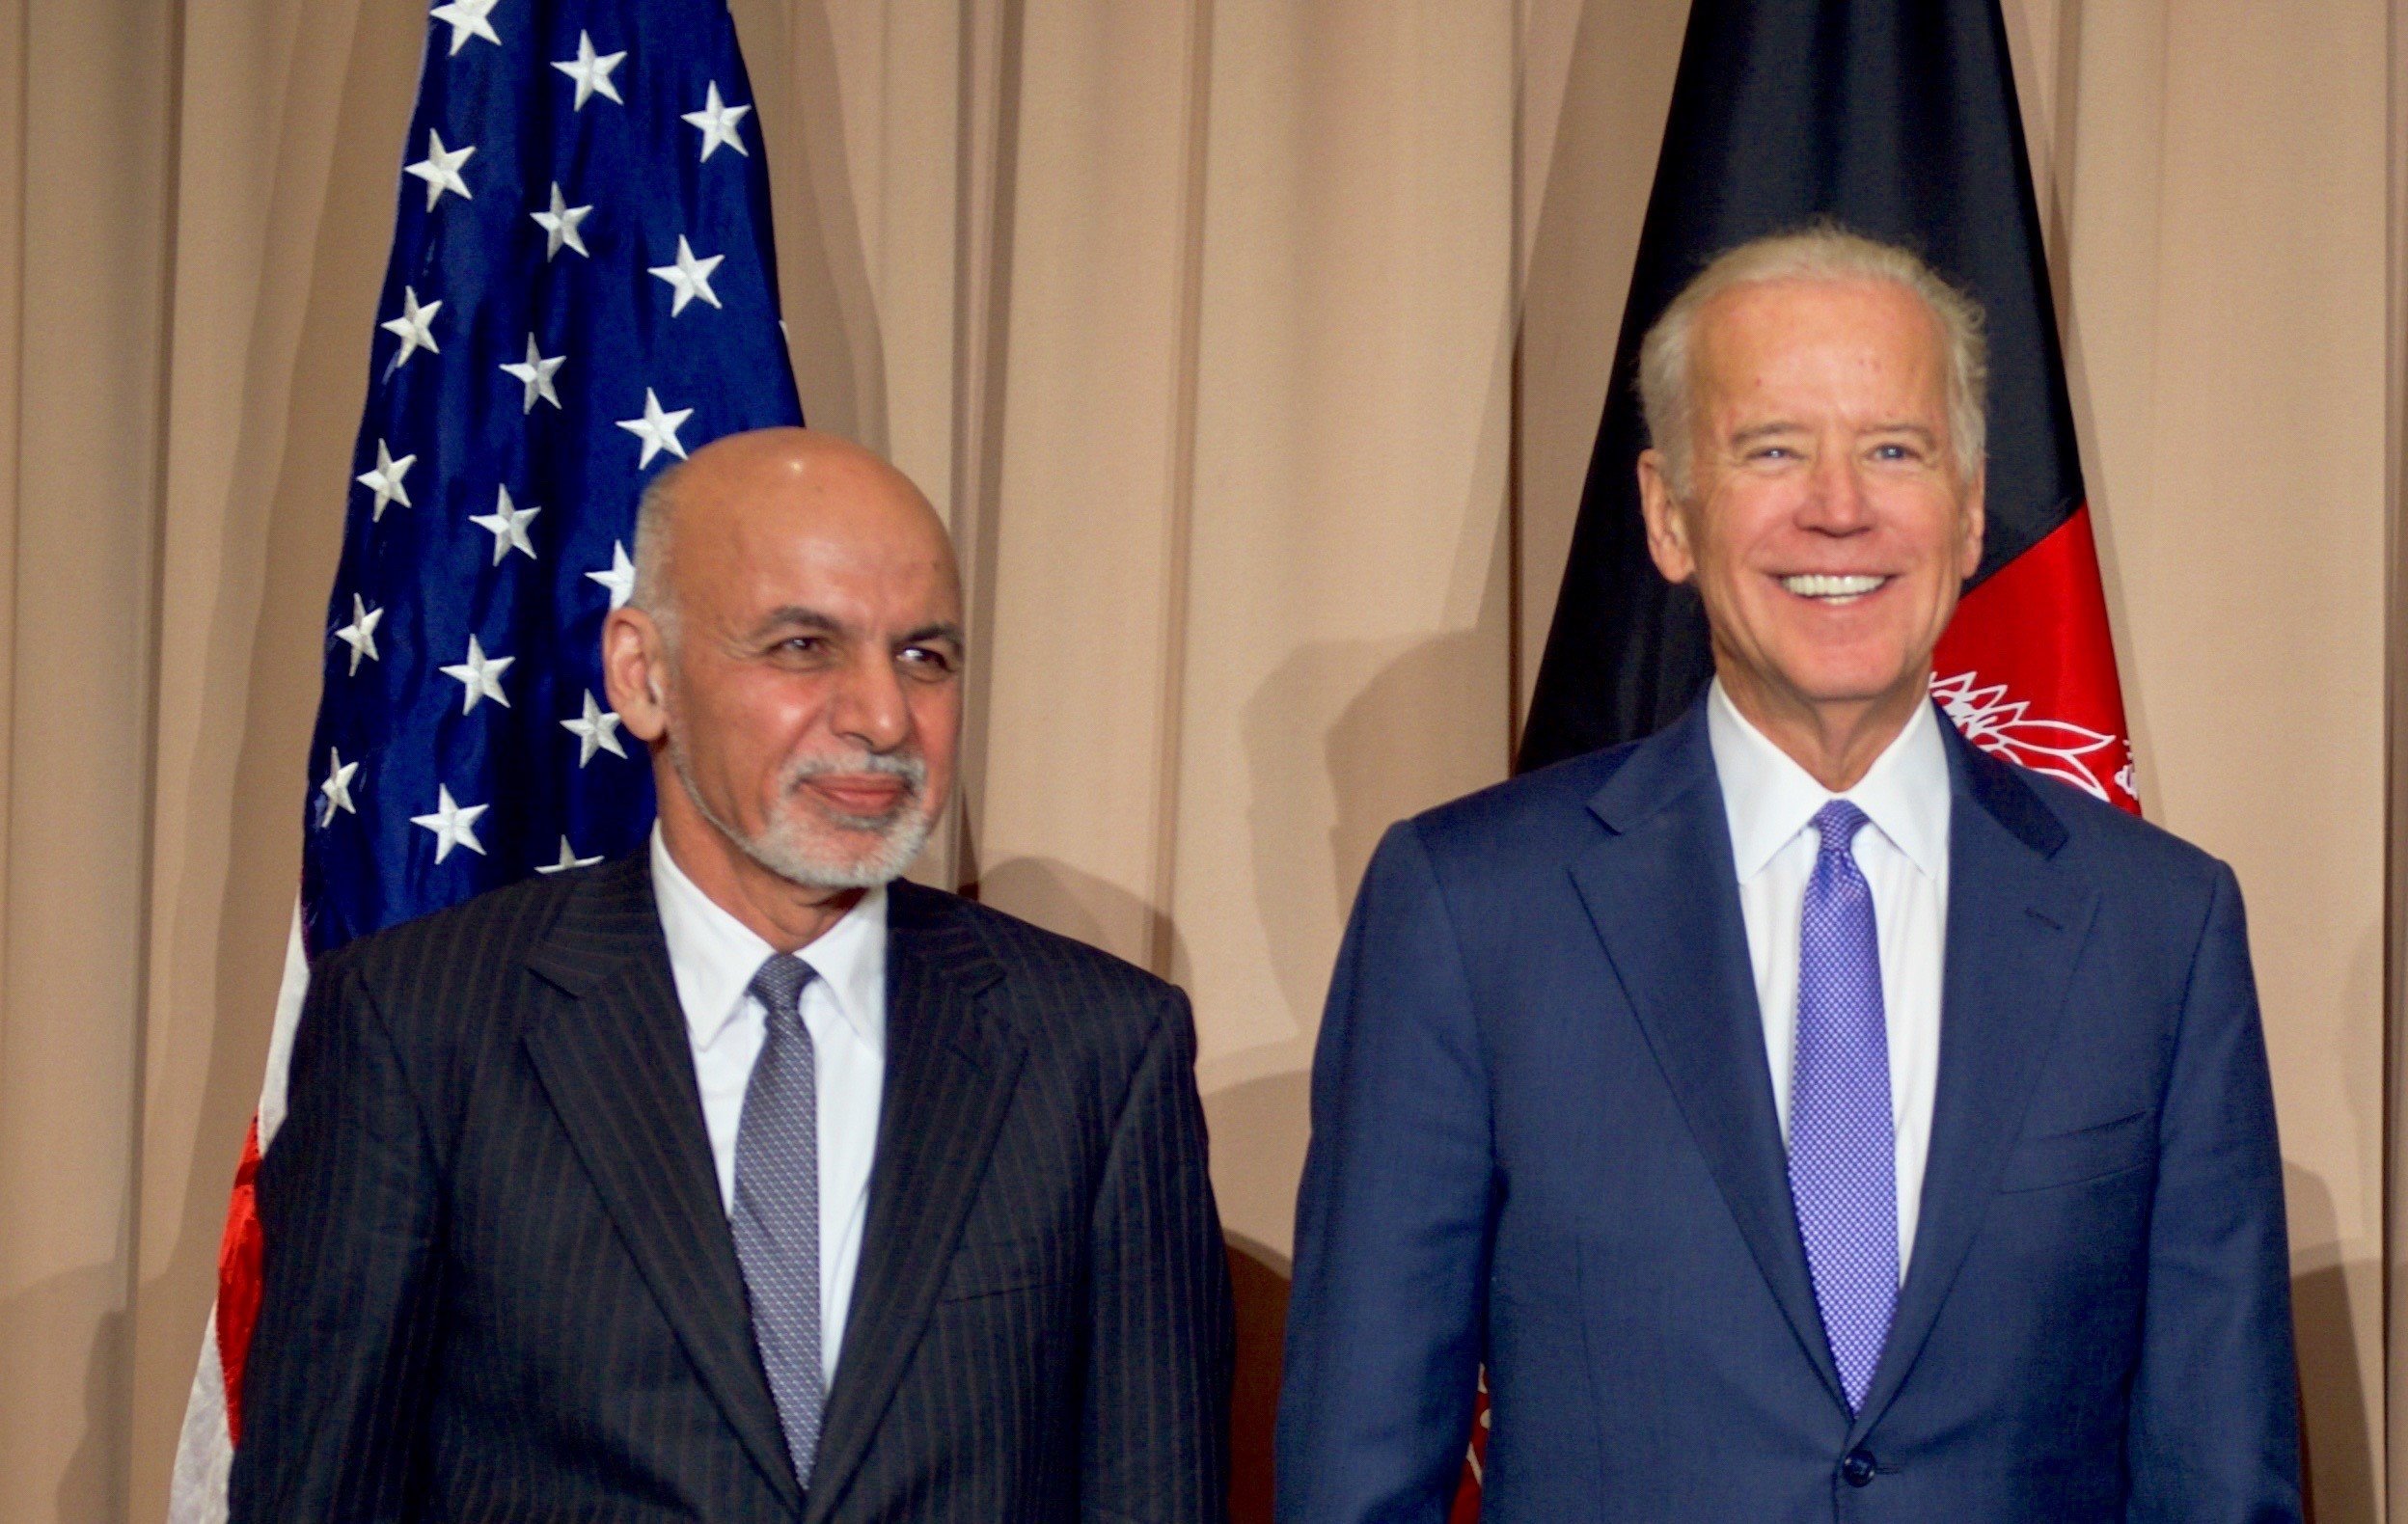  Biden confiscă rezervele Băncii centrale afgane şi rezervă jumătate victimelor atentatelor de la 11 septembrie 2001